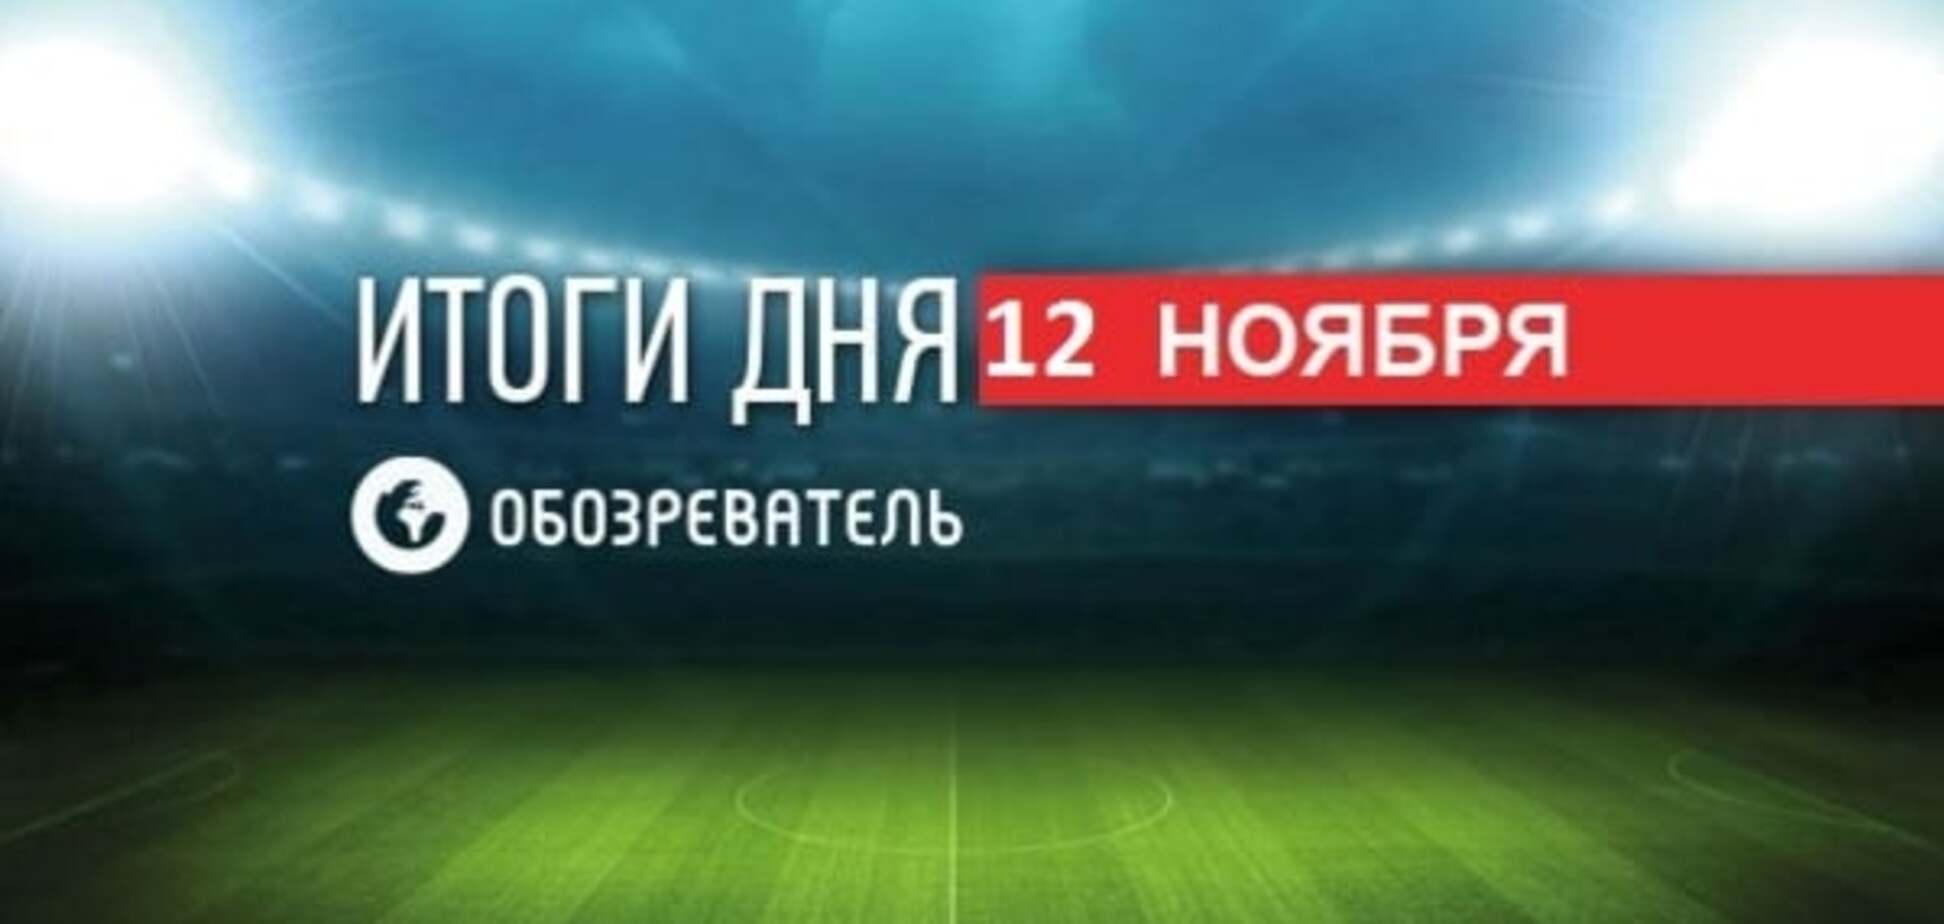 'Динамо' зробило гучну заяву. Спортивні підсумки за 12 жовтня